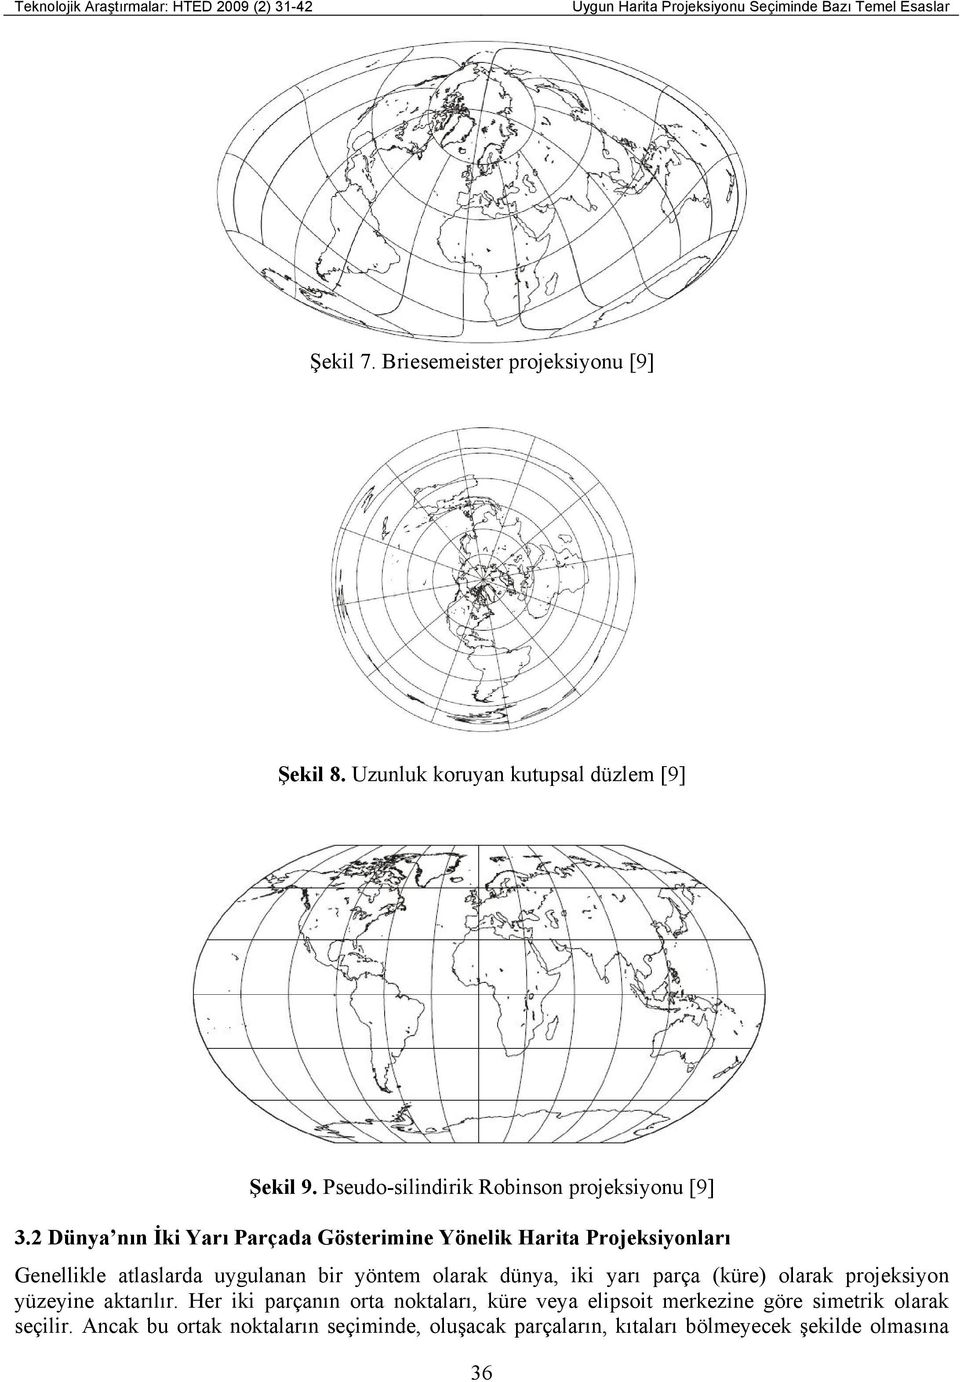 2 Dünya nın İki Yarı Parçada Gösterimine Yönelik Harita Projeksiyonları Genellikle atlaslarda uygulanan bir yöntem olarak dünya, iki yarı